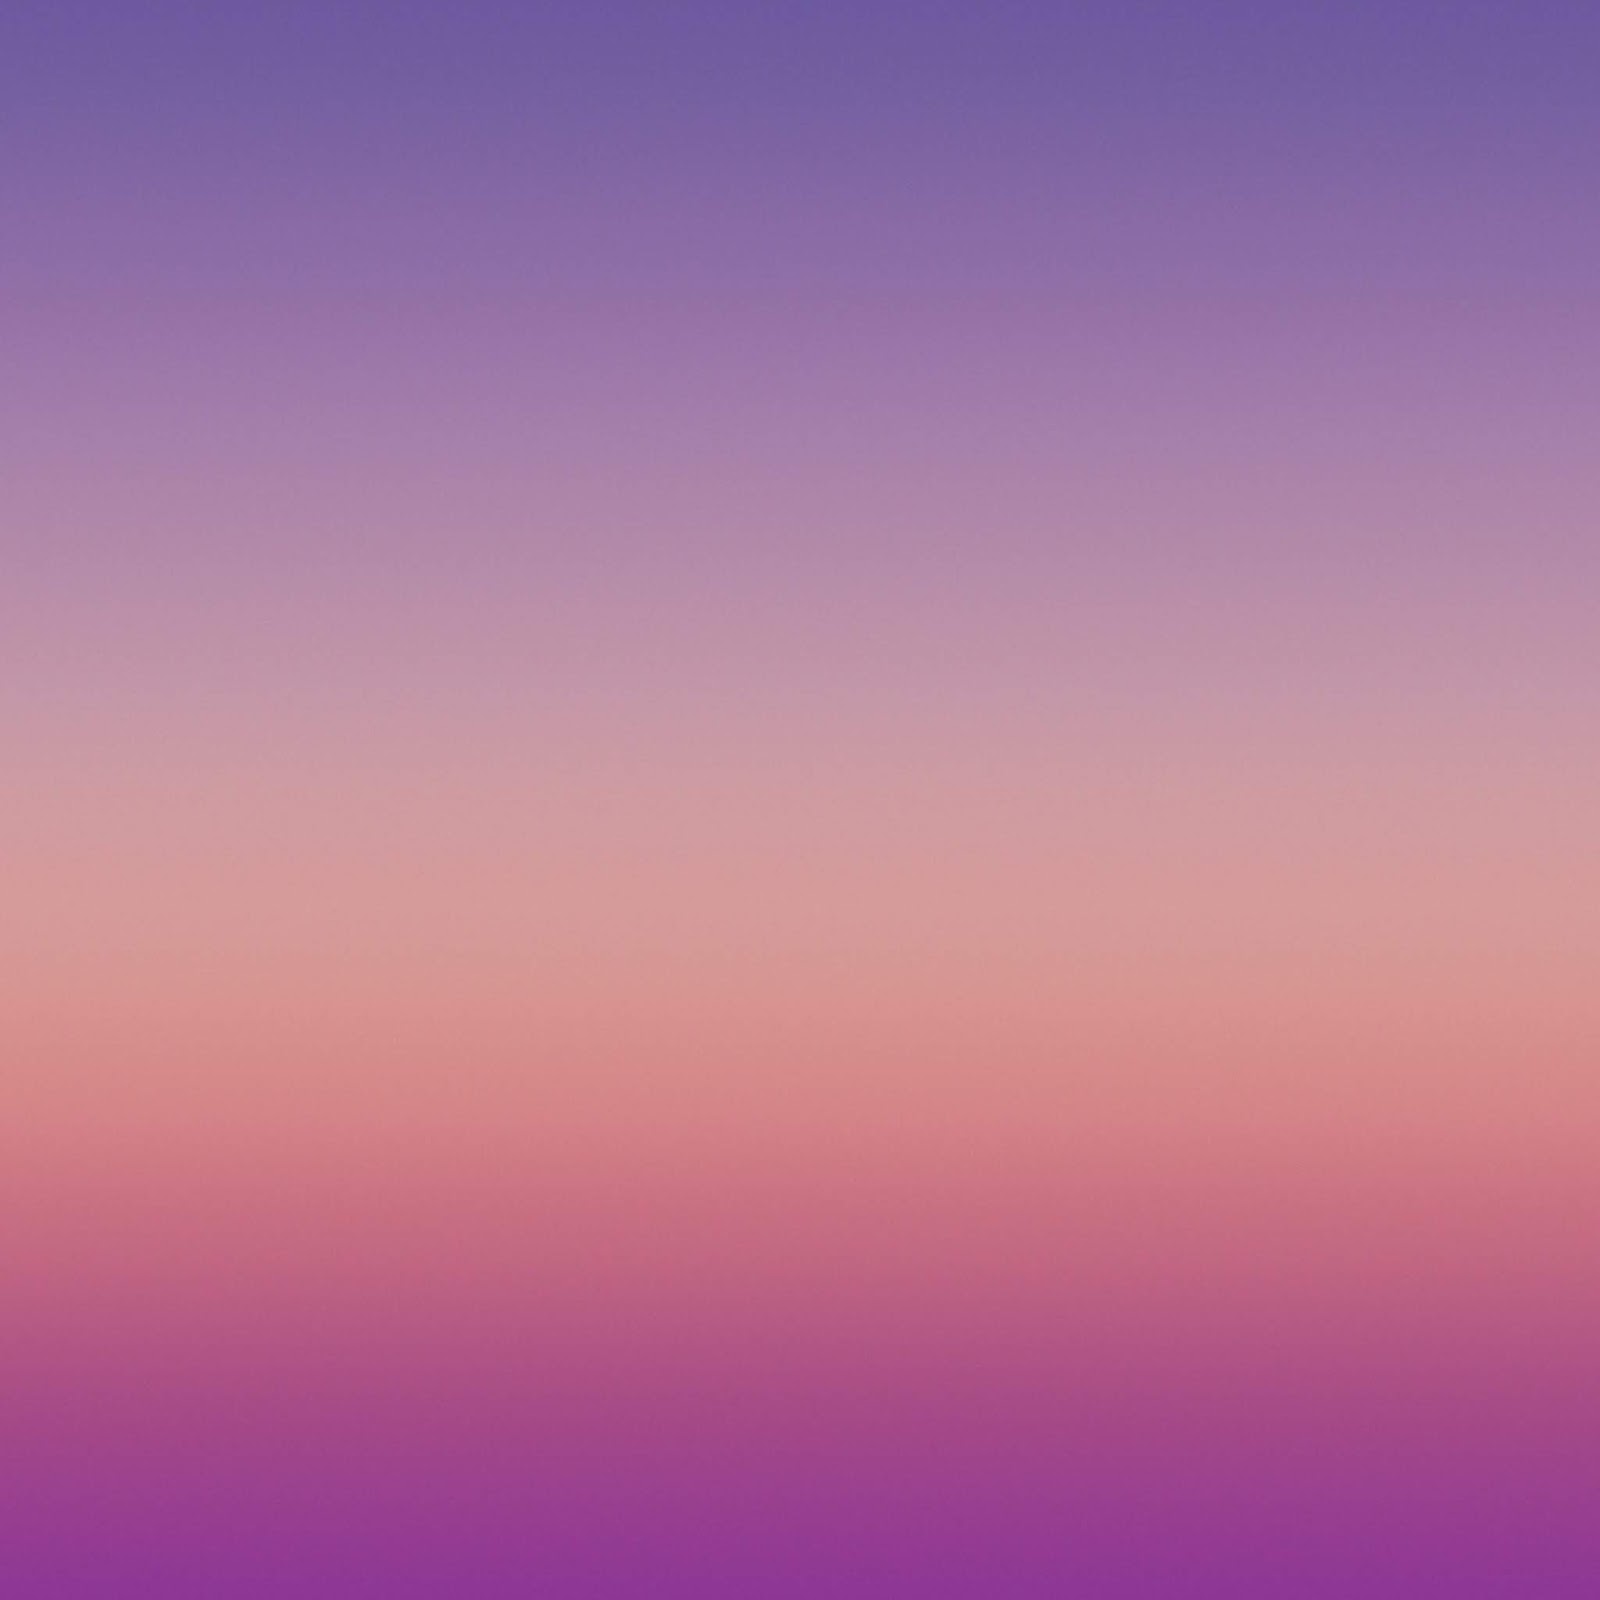 갤럭시 노트 3 배경 화면 hd 1080p,하늘,제비꽃,푸른,보라색,분홍